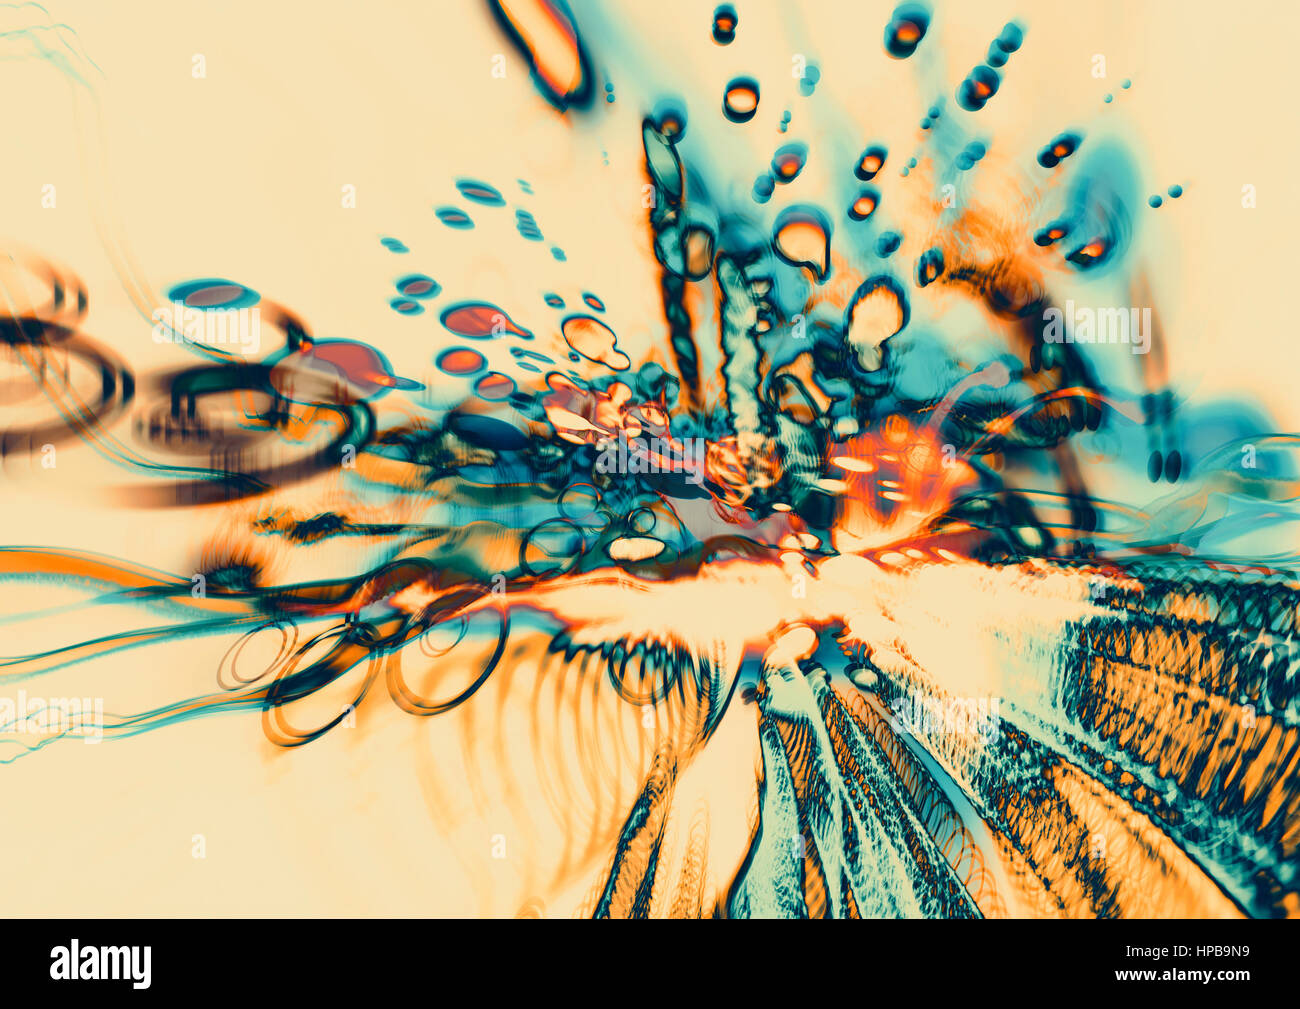 Arte digital del moderno movimiento abstracto,coloridas manchas borrosas Foto de stock